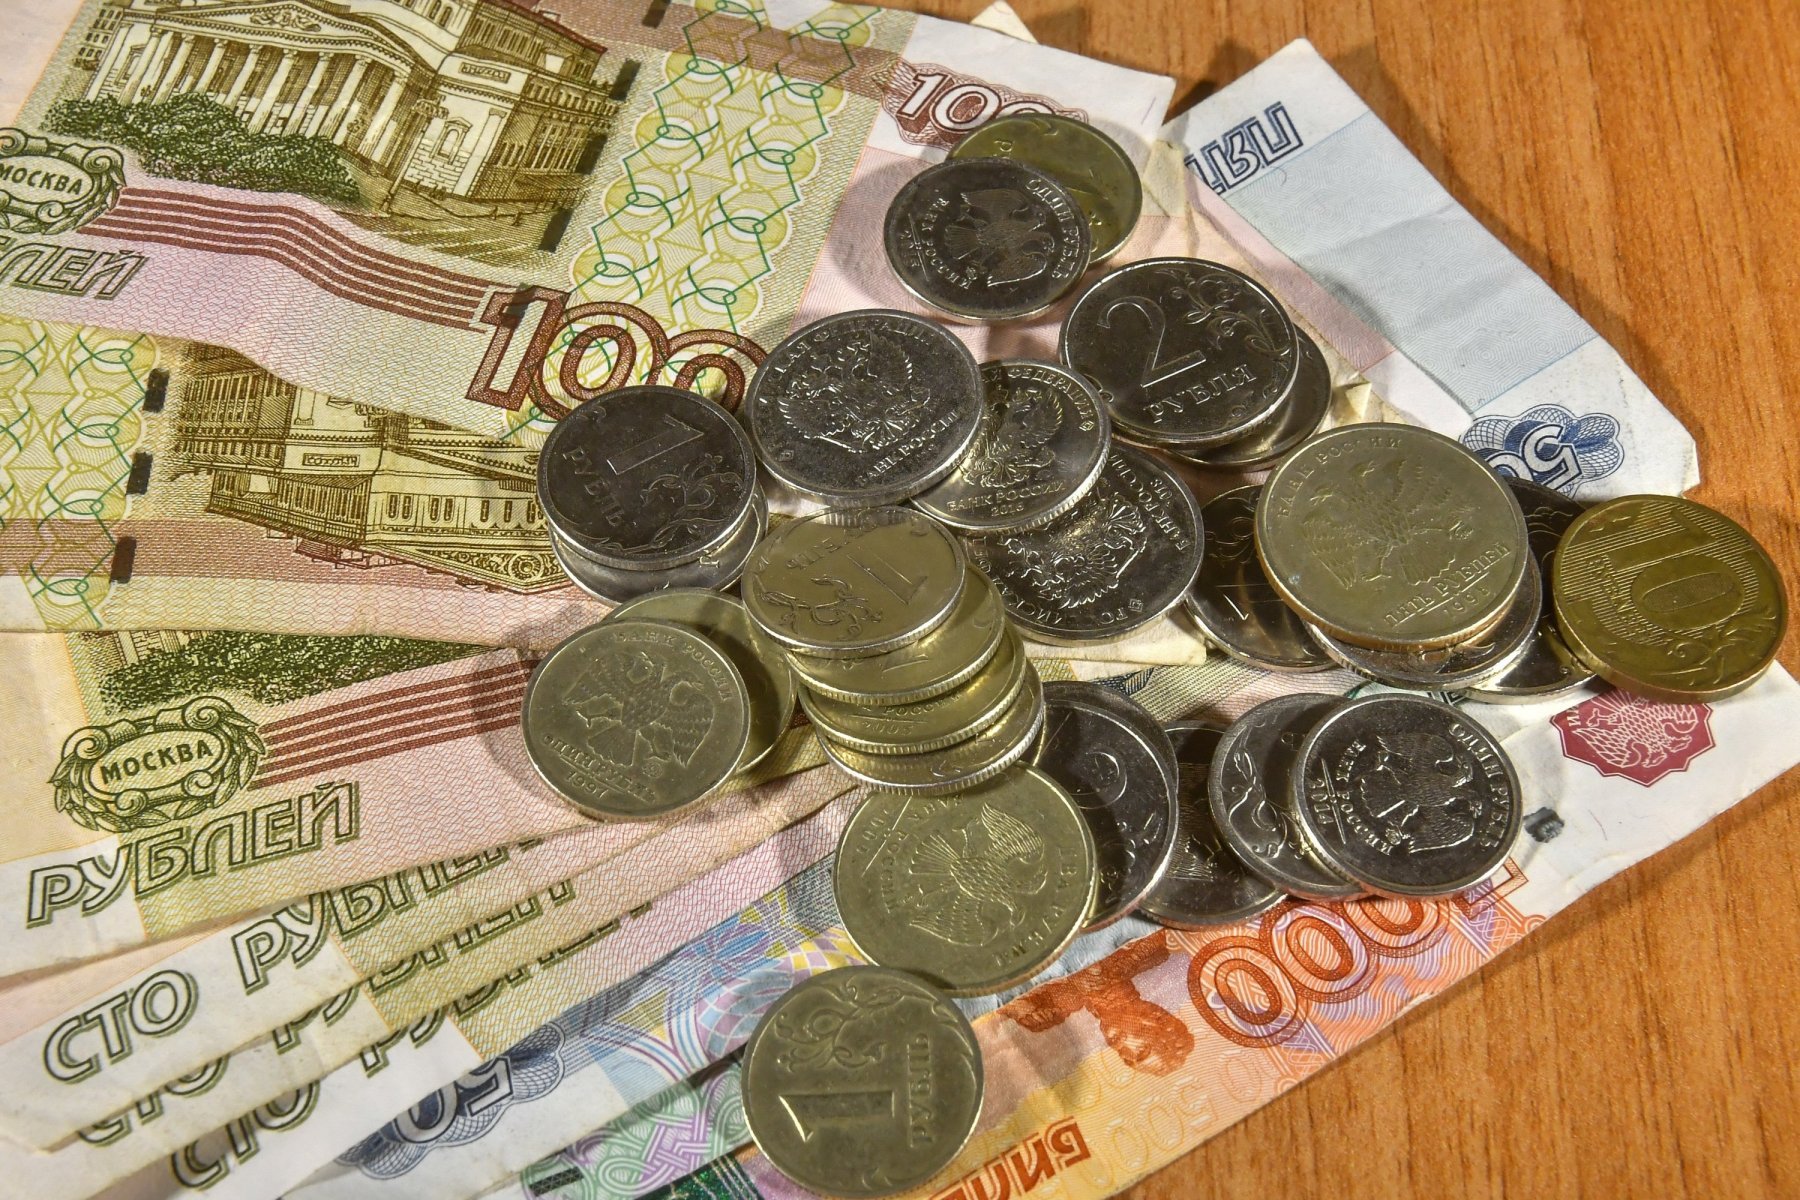 Ежемесячная выплата на первого ребёнка в Волоколамском округе увеличена до 13 317 рублей 